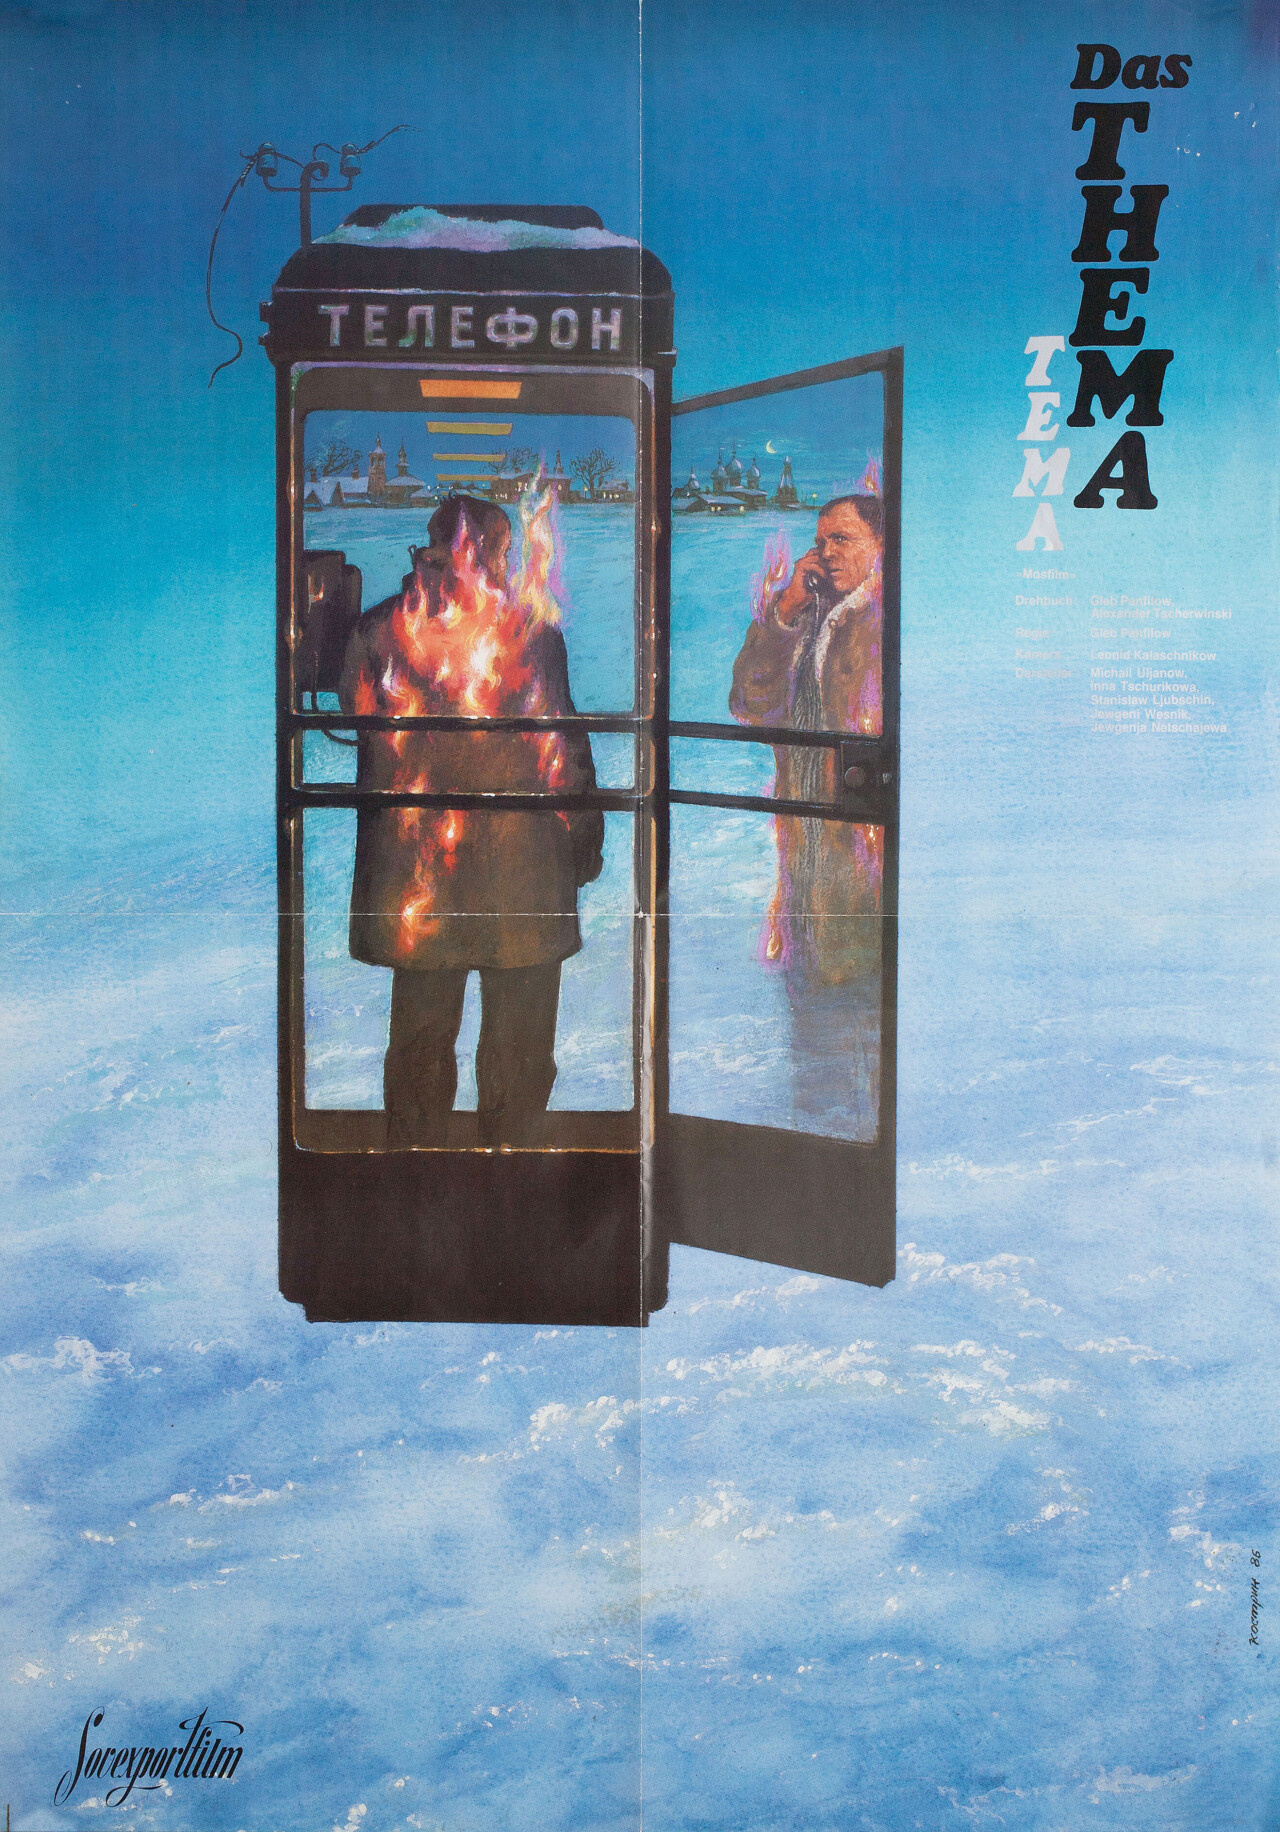 Тема (Tema, 1979), режиссёр Глеб Панфилов, минималистичный постер к фильму (Россия, 1986 год), автор Л. Бог